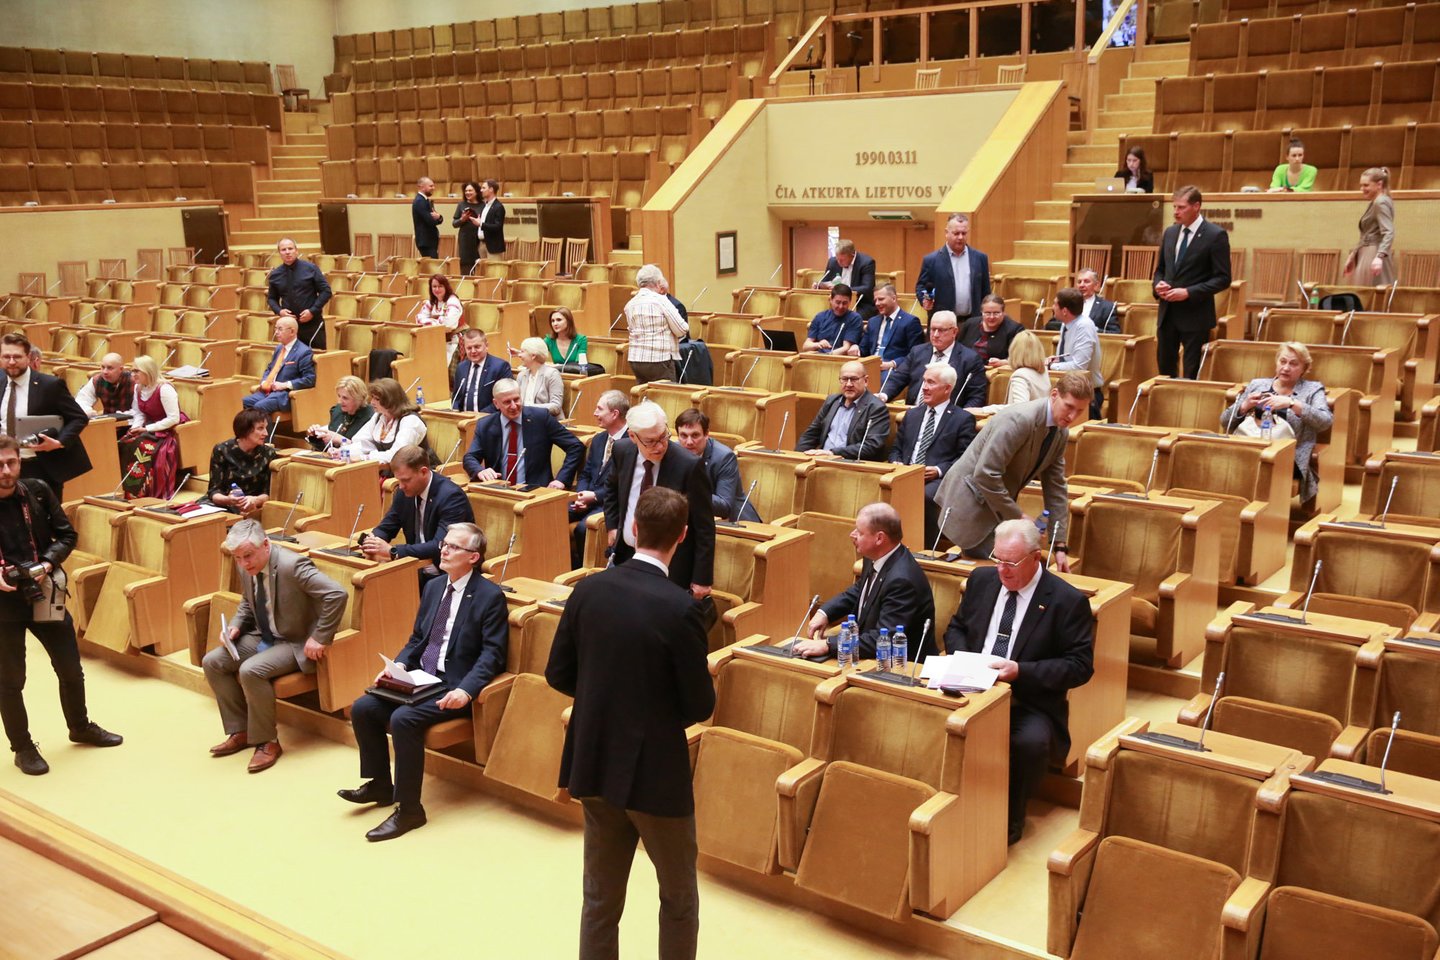  Valdančiųjų pastangos gesinti įsiplieskusį konfliktą su Seimo opozicija kol kas rezultatų nedavė – po suformuotos dialogo grupės susitikimo su Seimo pirmininke Viktorija Čmilyte-Nielsen opozinių frakcijų atstovai teigė ir toliau tęsiantys parlamento plenarinių posėdžių bei darbo komitetuose boikotą. <br> R.Danisevičiaus nuotr.